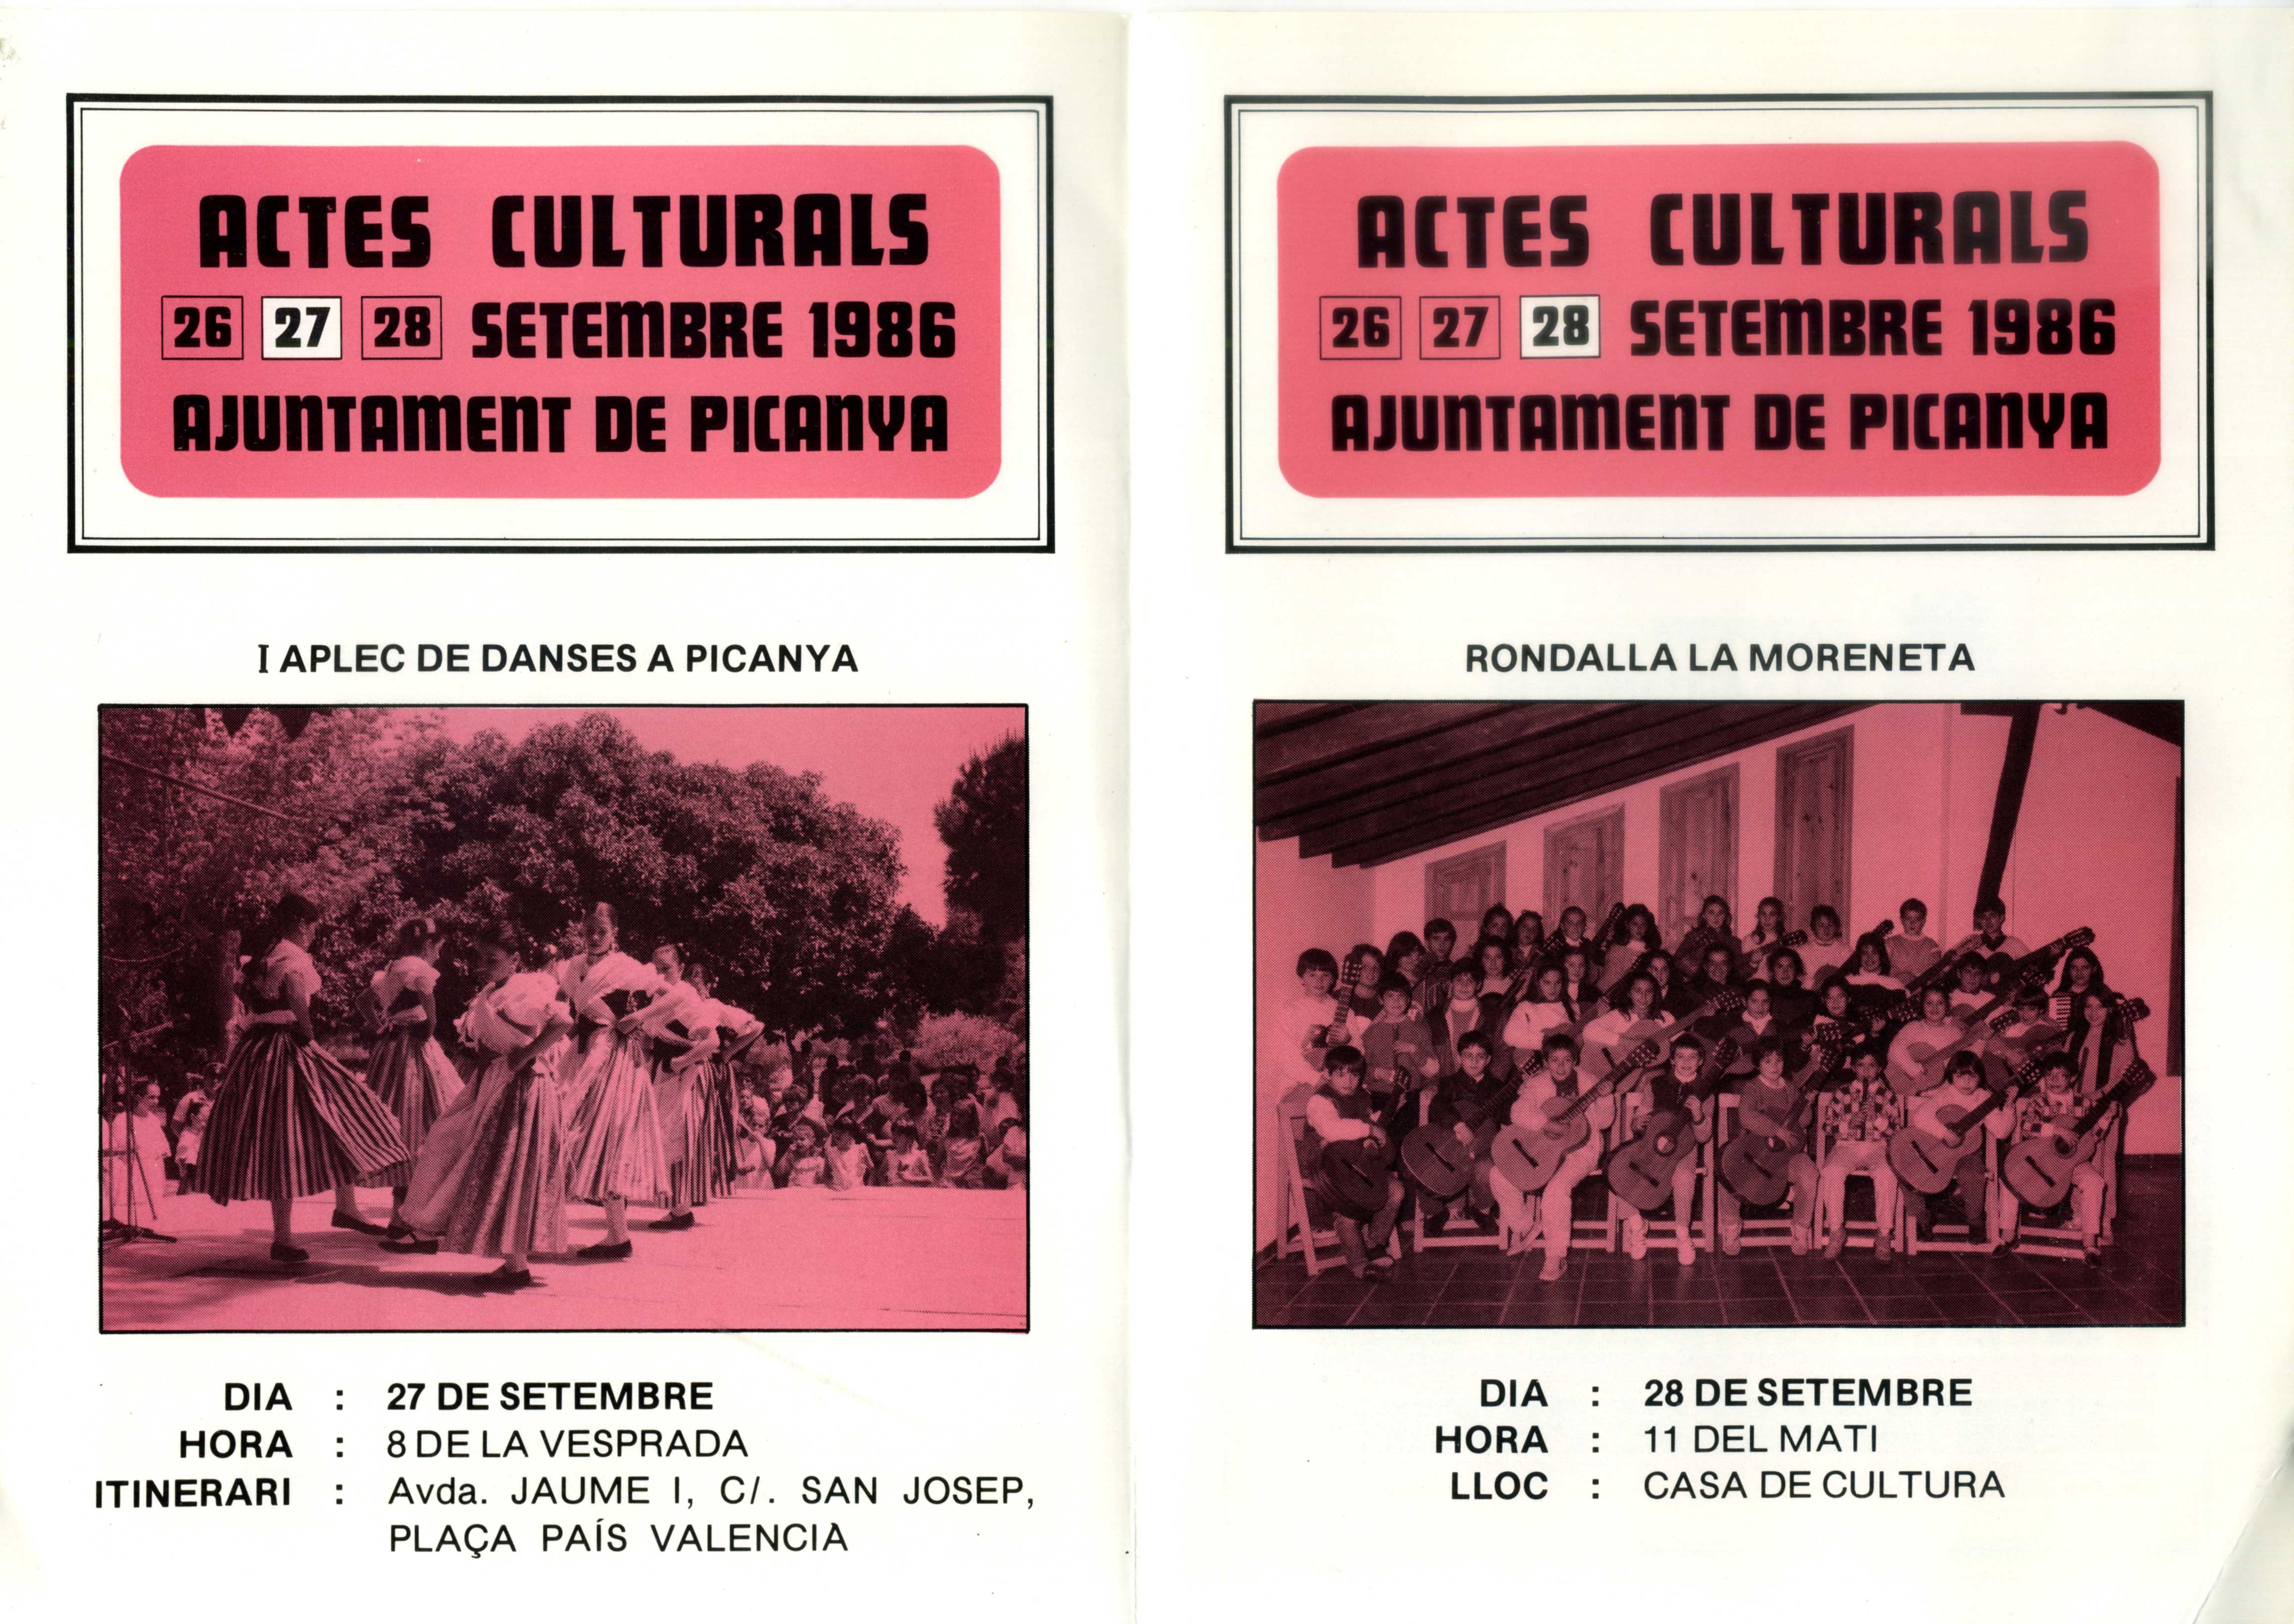 CEL-DO-A0140 - Actes Culturals (1)